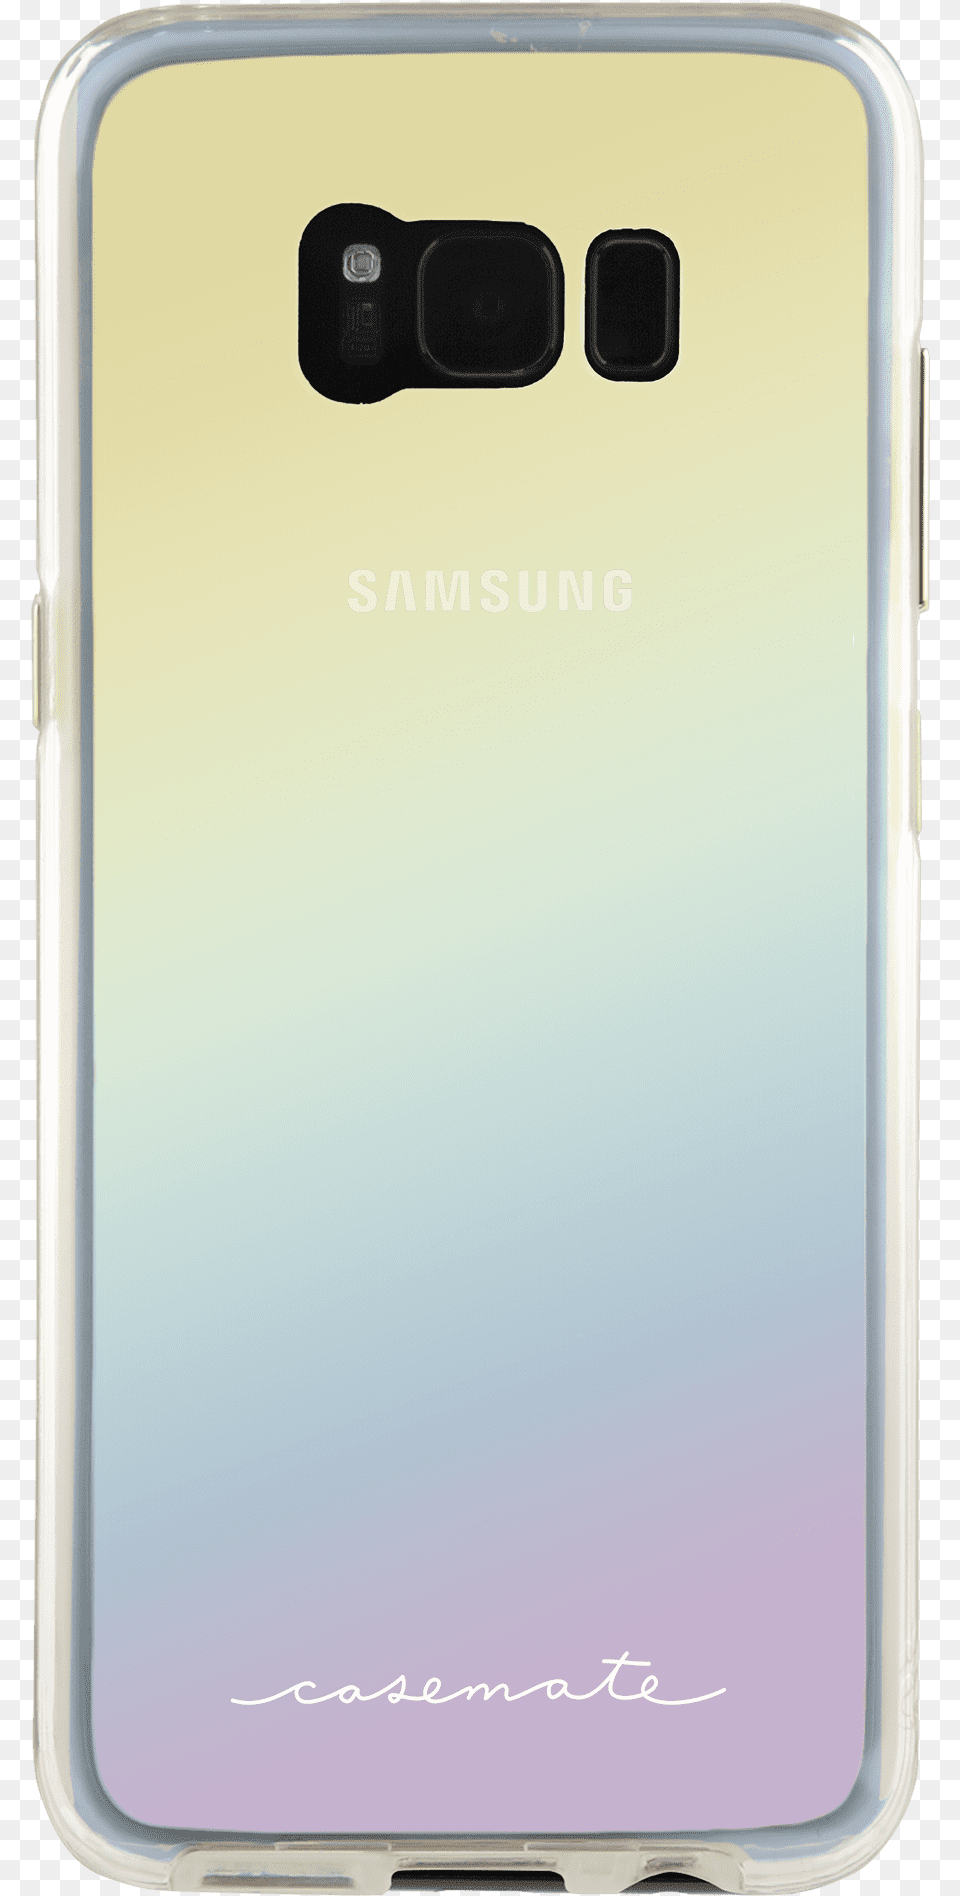 Cmi Nakedtough Iridescent 1 Samsung Galaxy, Electronics, Mobile Phone, Phone, Iphone Free Transparent Png